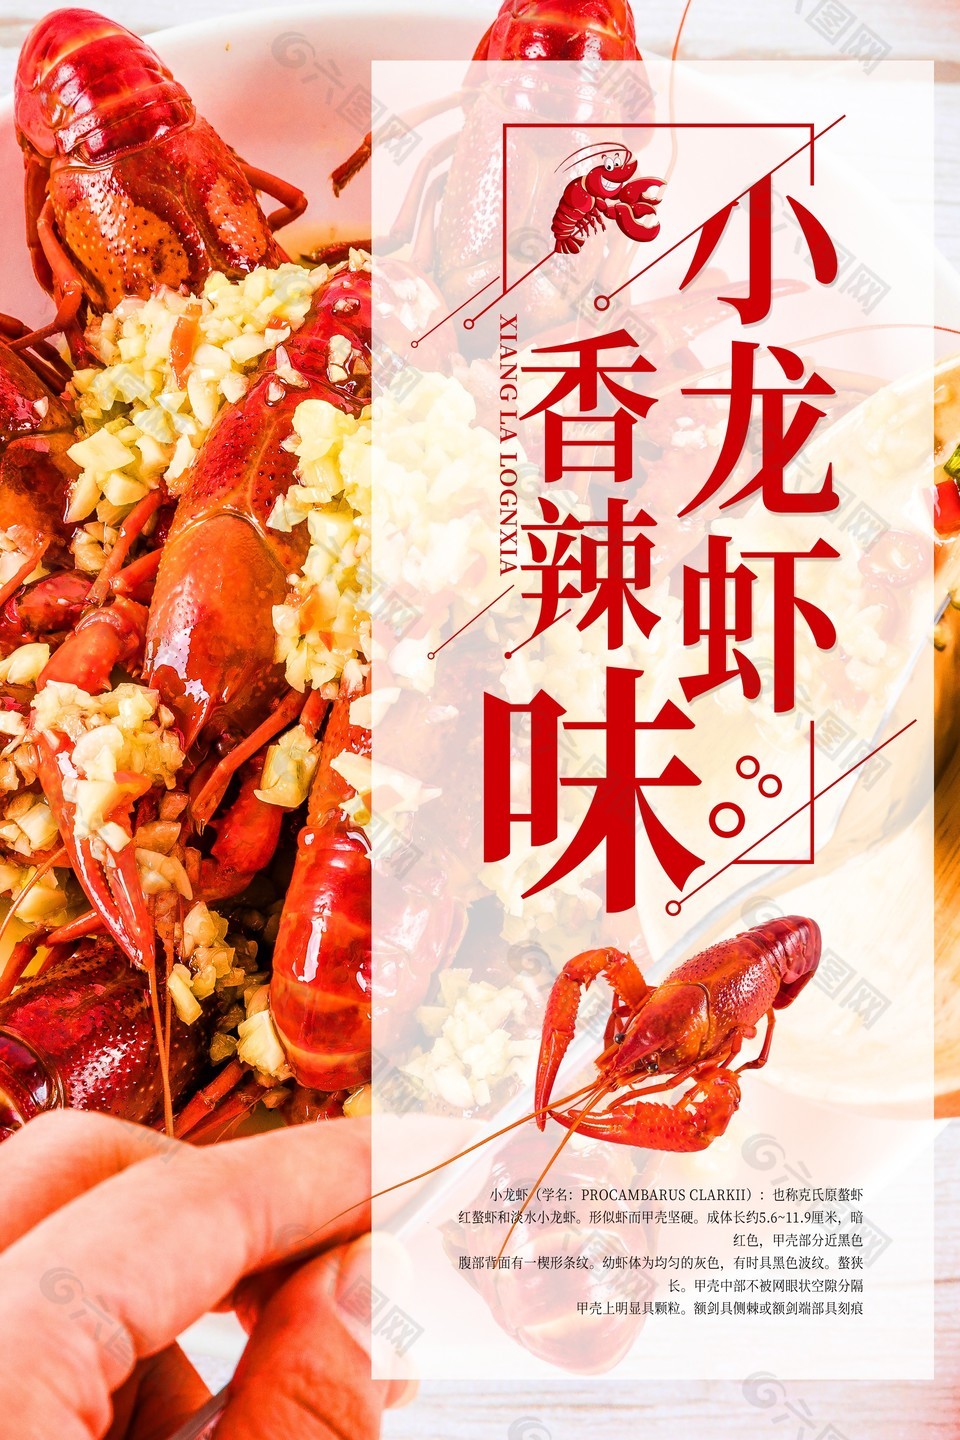 麻辣小龙虾蒜蓉料理中华美食主题海报